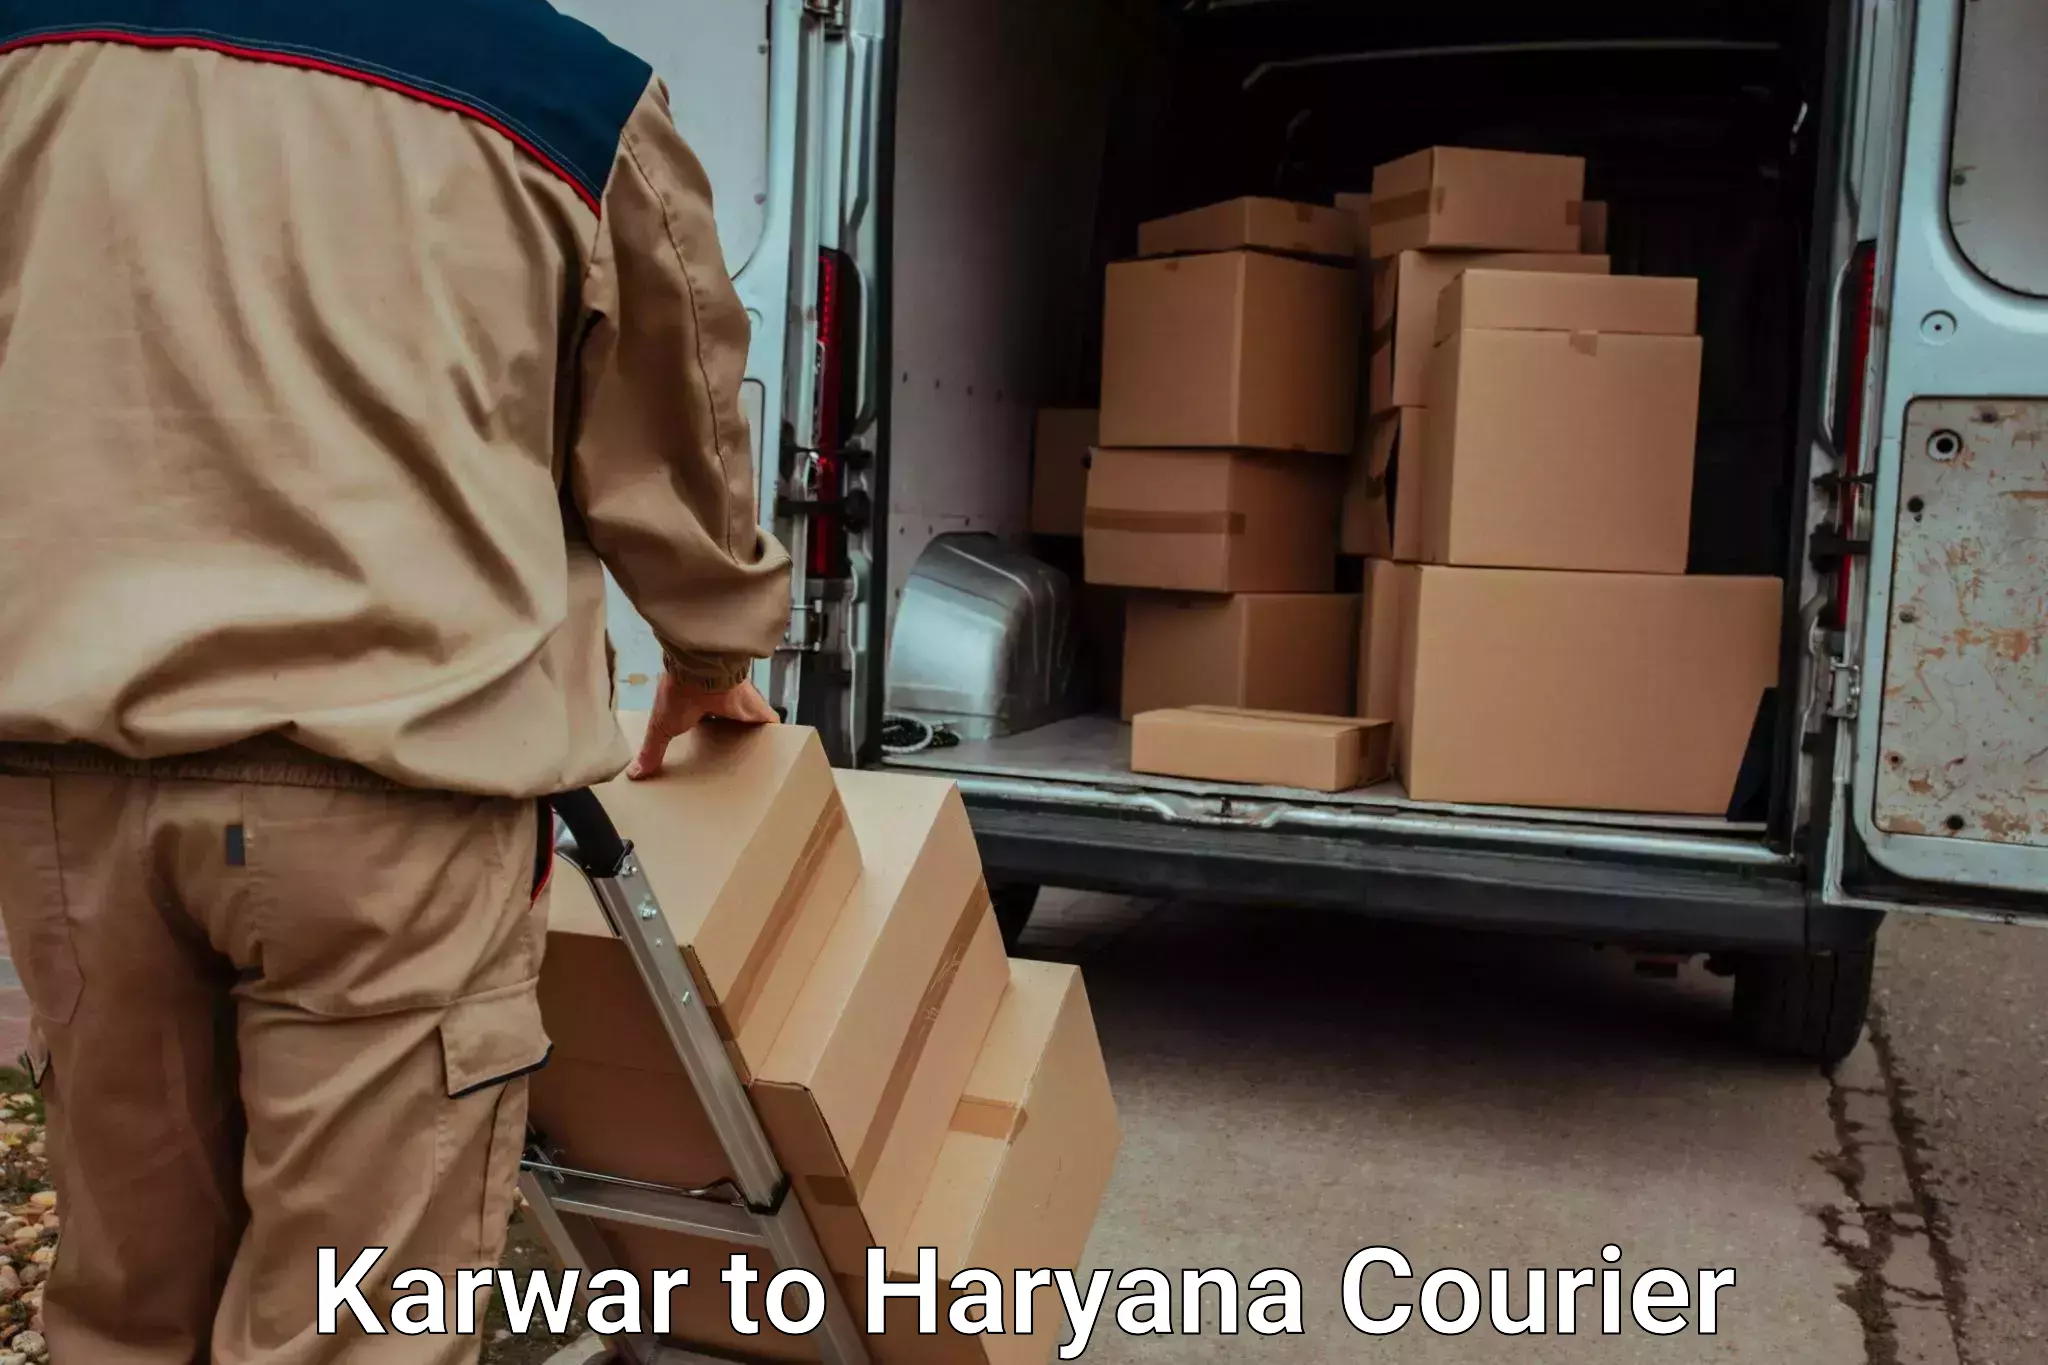 Stress-free household moving Karwar to Haryana